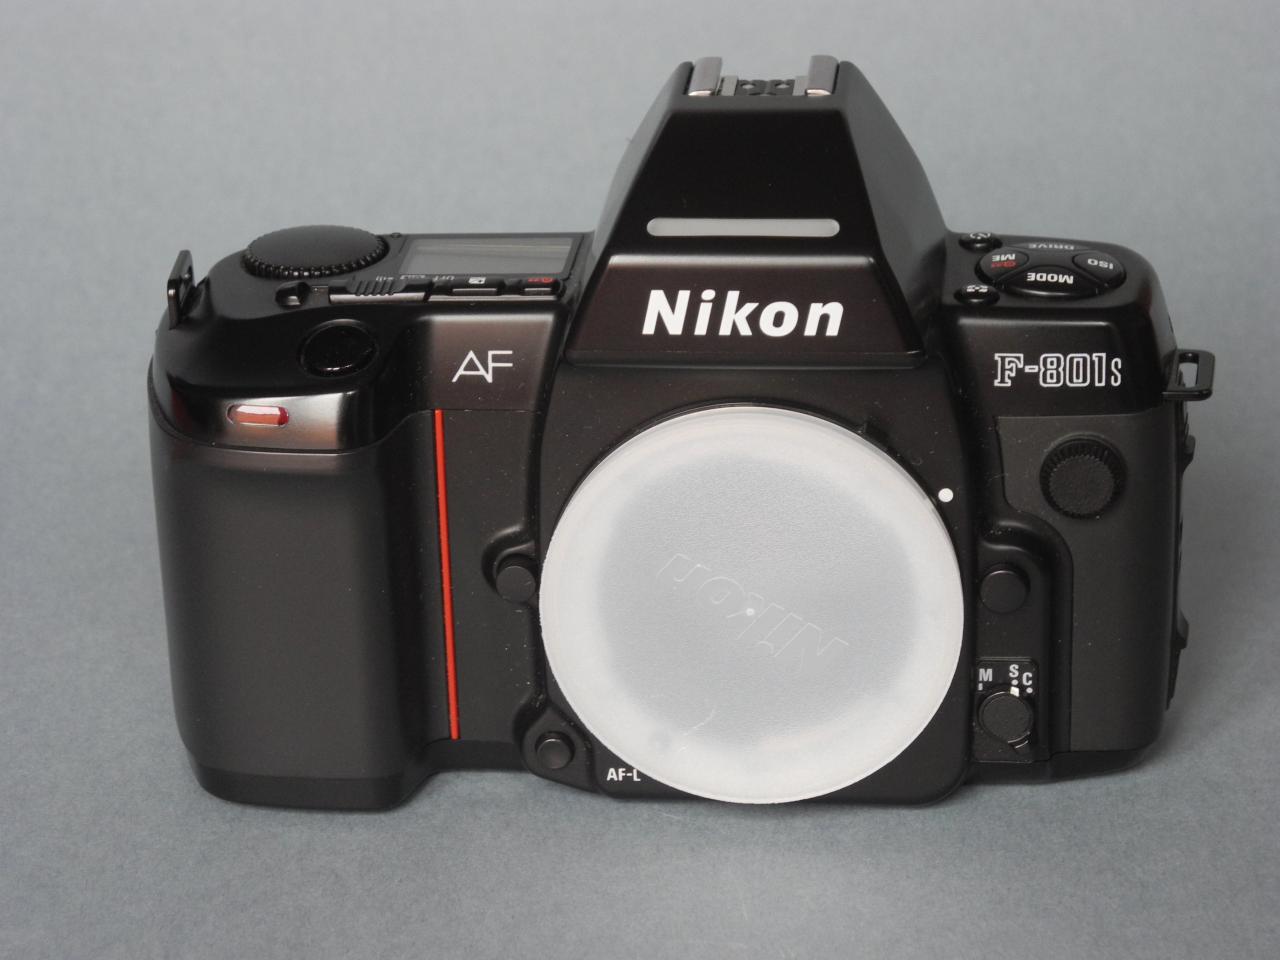 *Nikon F801s film135 1992*